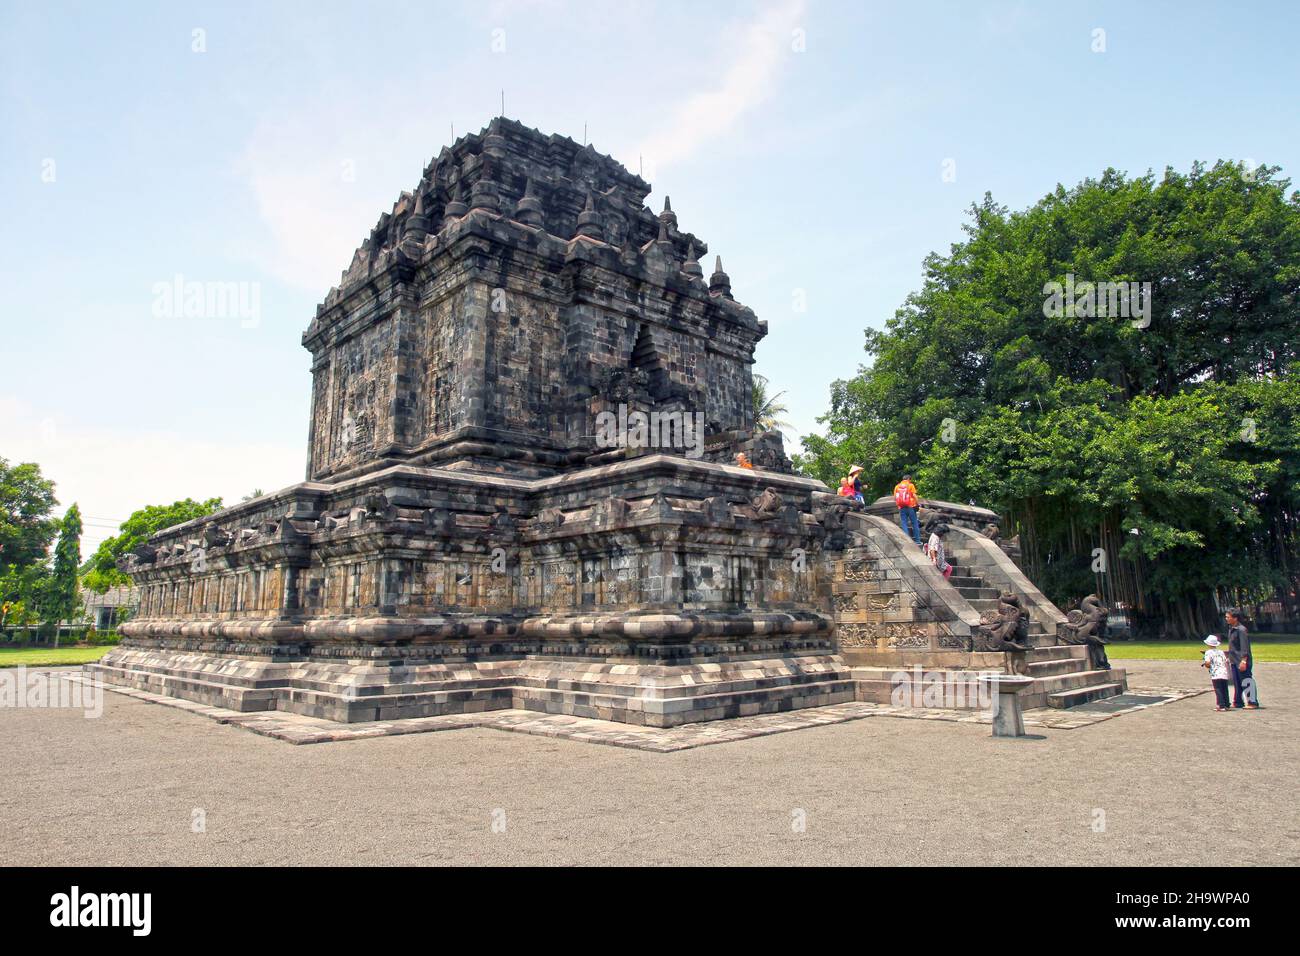 Der Mendut-Tempel im Dorf Mendut in Magelang, der im 9th. Jahrhundert n. Chr. in Zentraljava, Indonesien erbaut wurde, liegt nur 3 km von Borobudur entfernt. Stockfoto